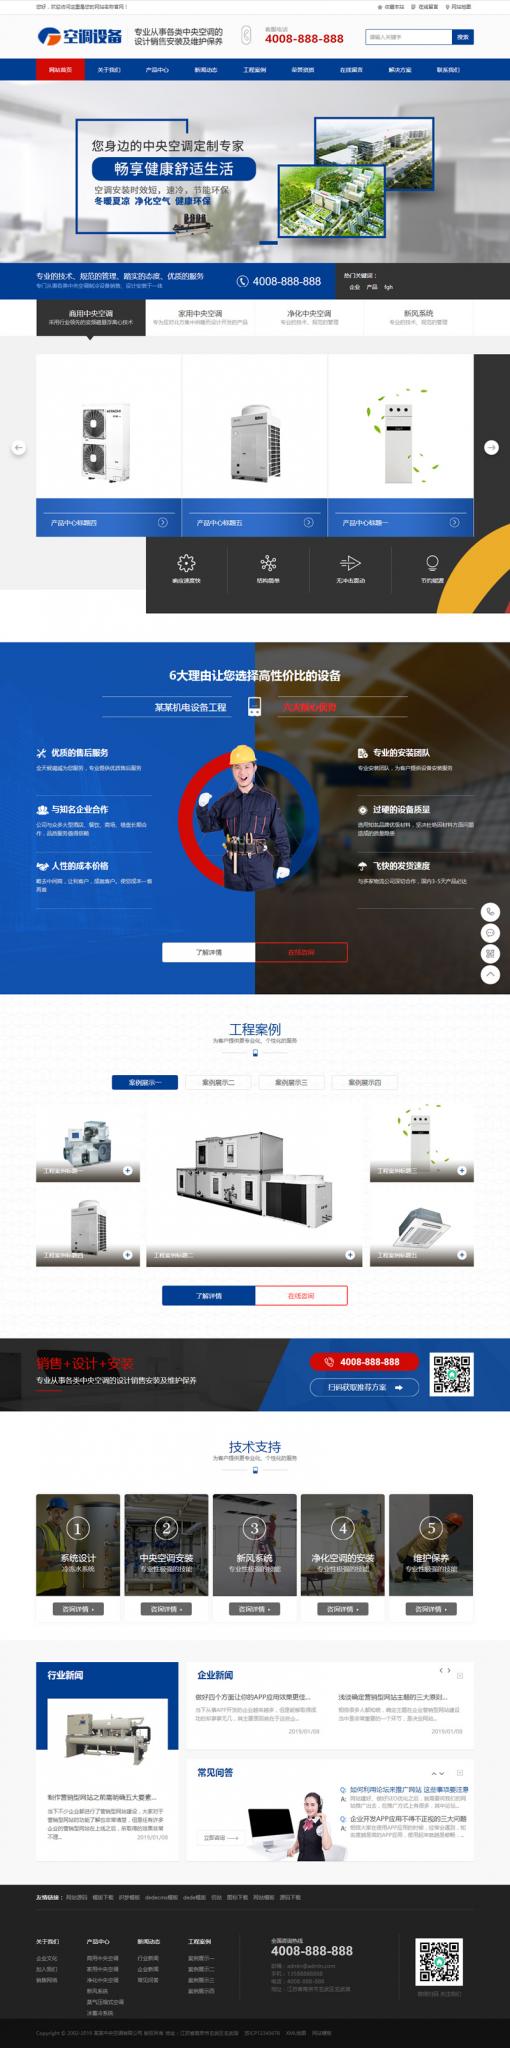 蓝色营销型中央空调设备系统类网站源码 大型制冷设备网站织梦模板插图